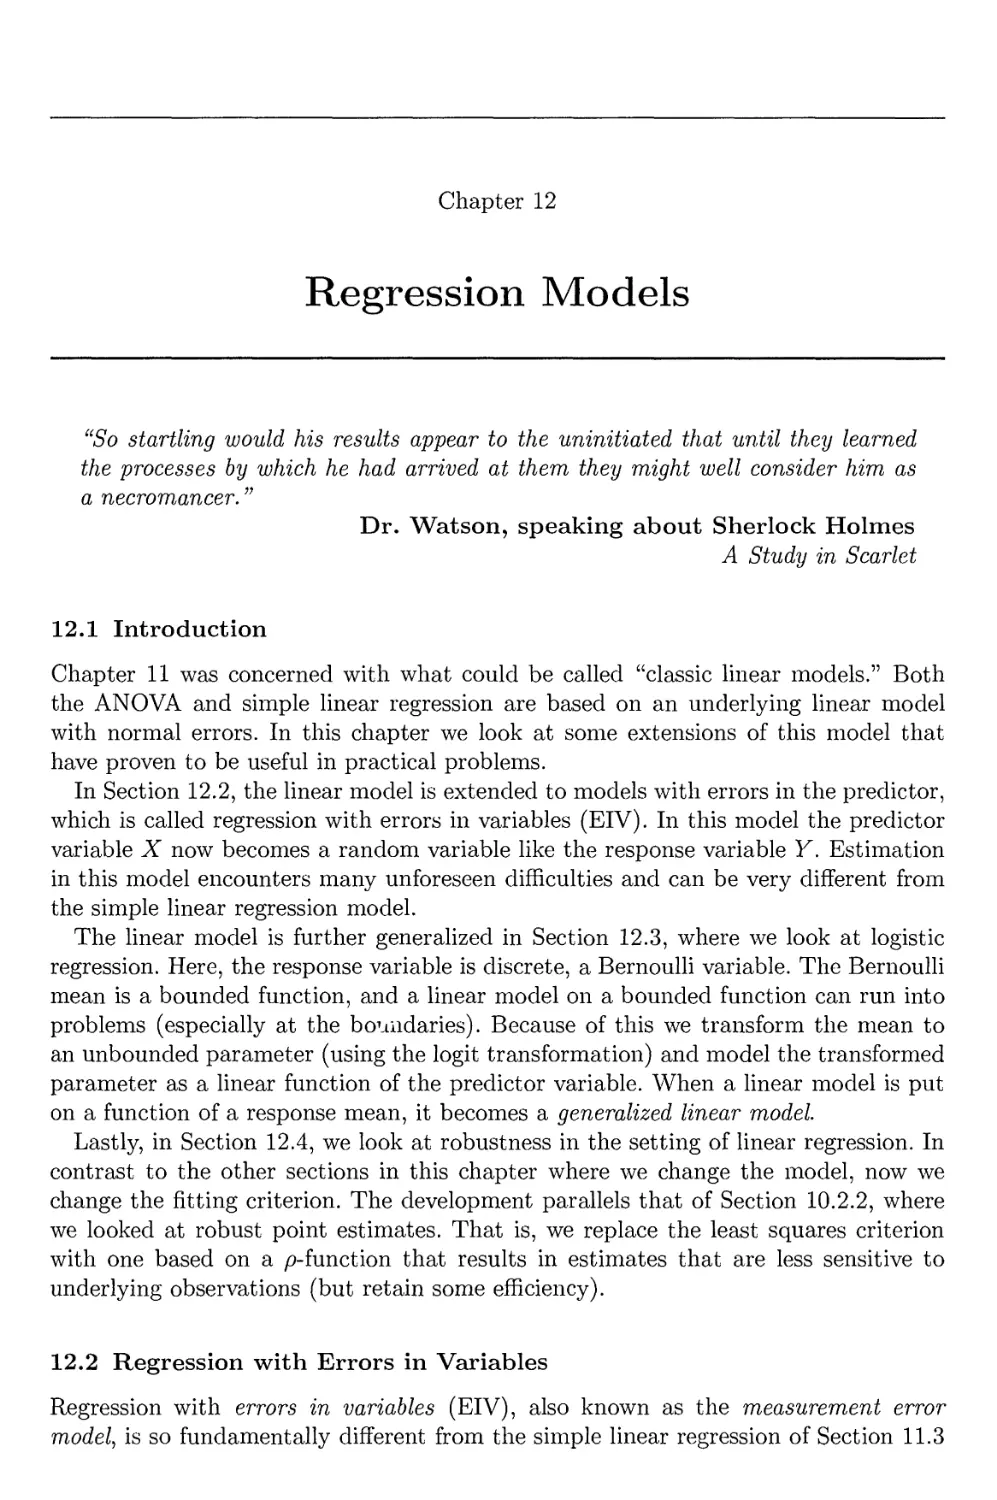 12. Regression Models